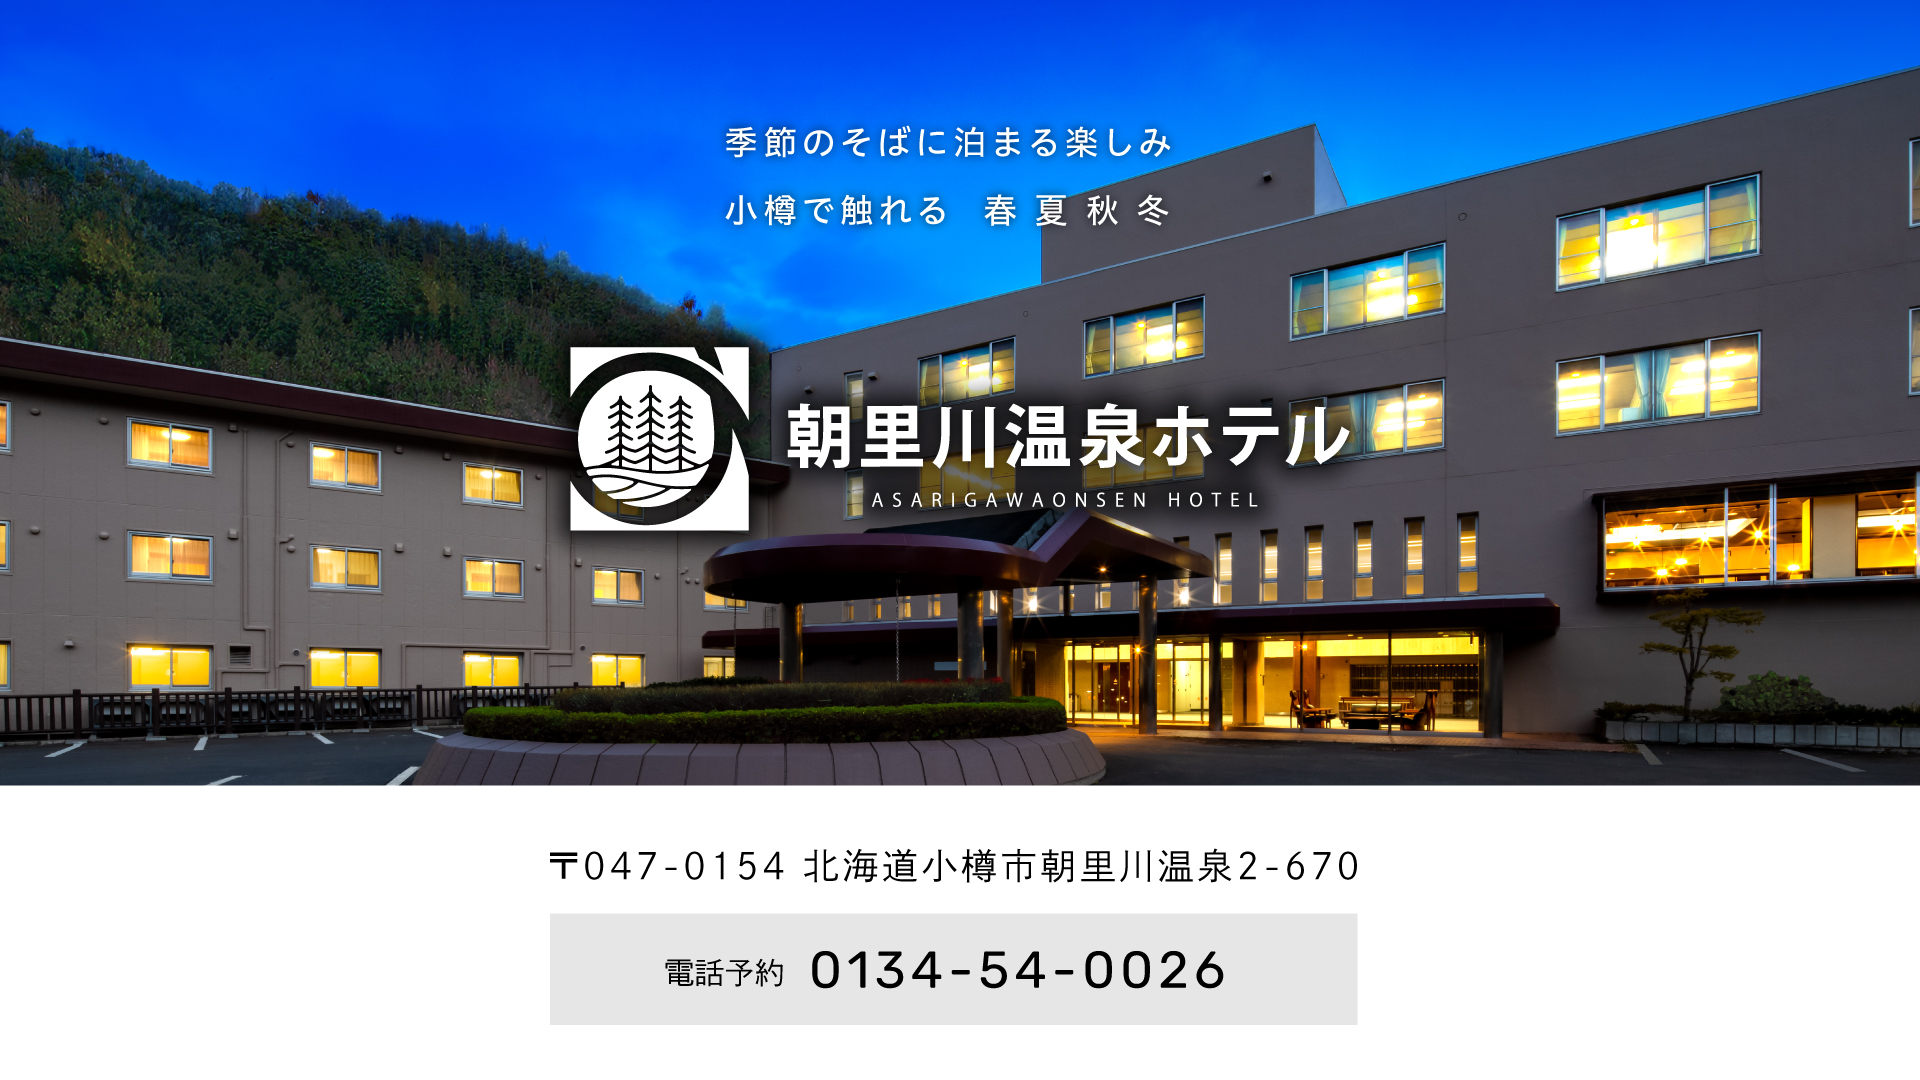 朝里川温泉ホテル 公式サイト